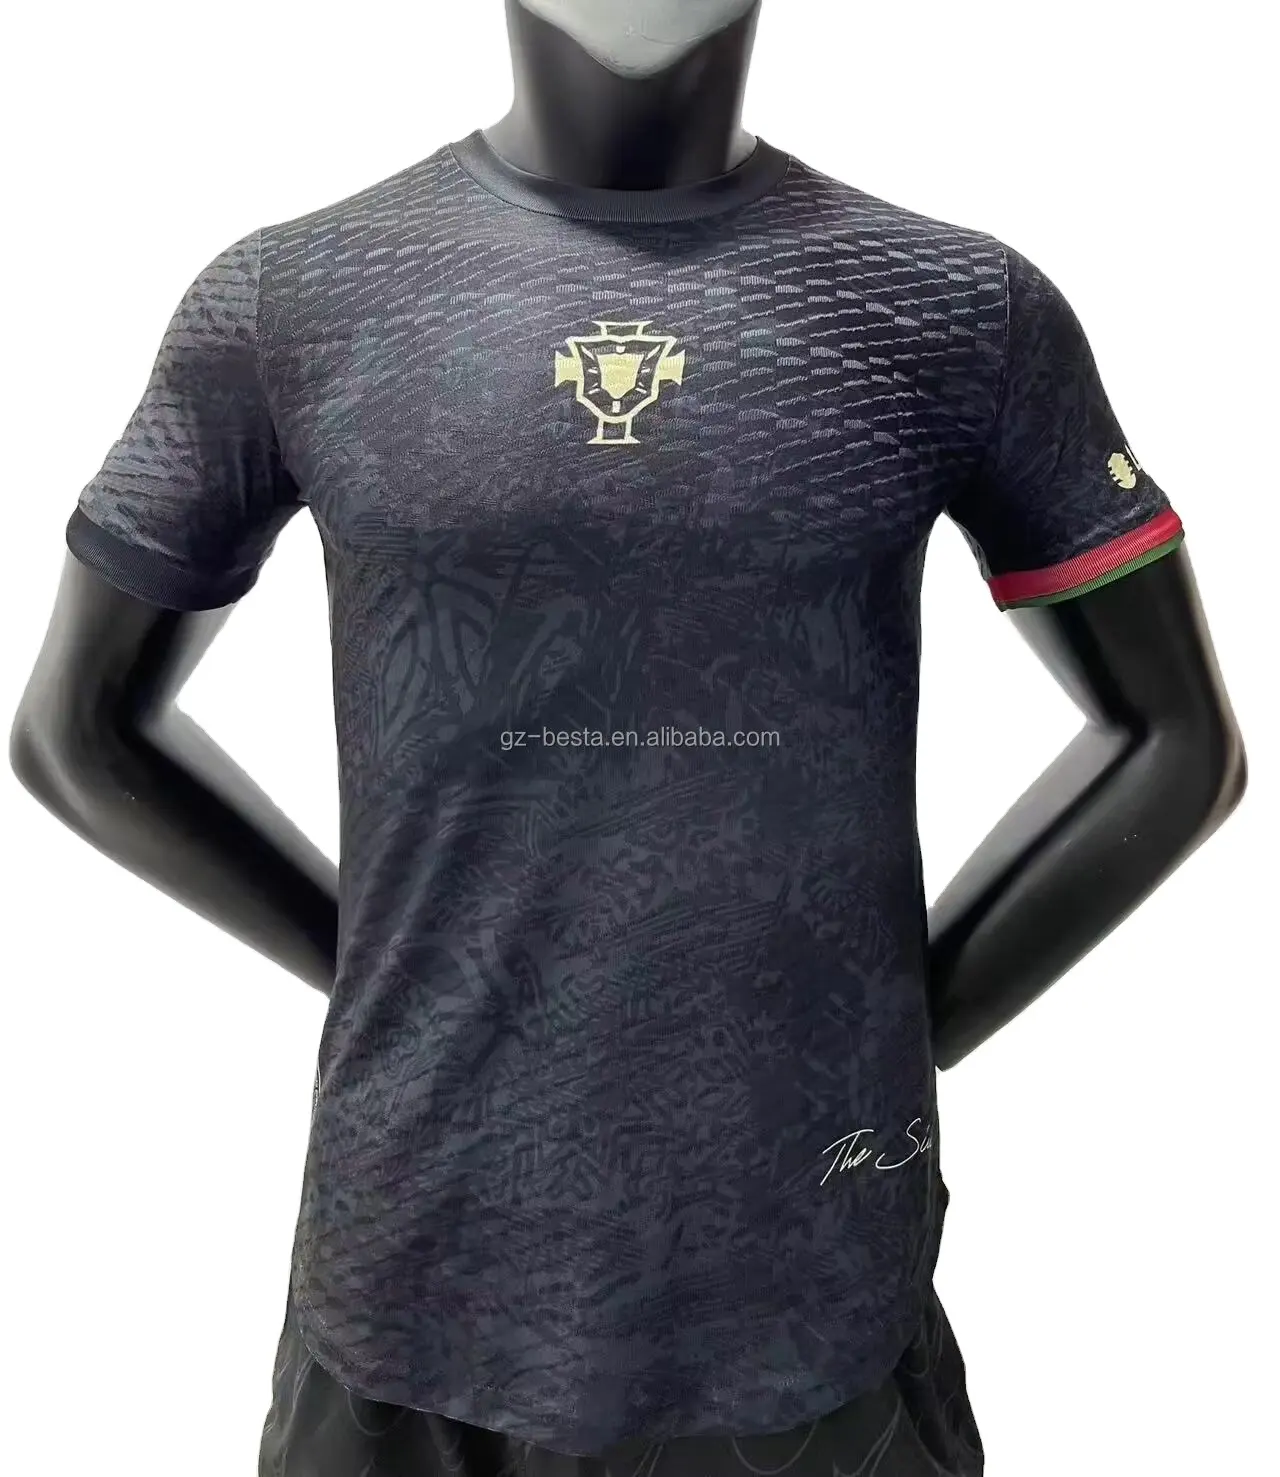 เสื้อฟุตบอลทีมชาติโปรตุเกสโรนัลโด้เสื้อฟุตบอลรุ่นพิเศษสีดำ